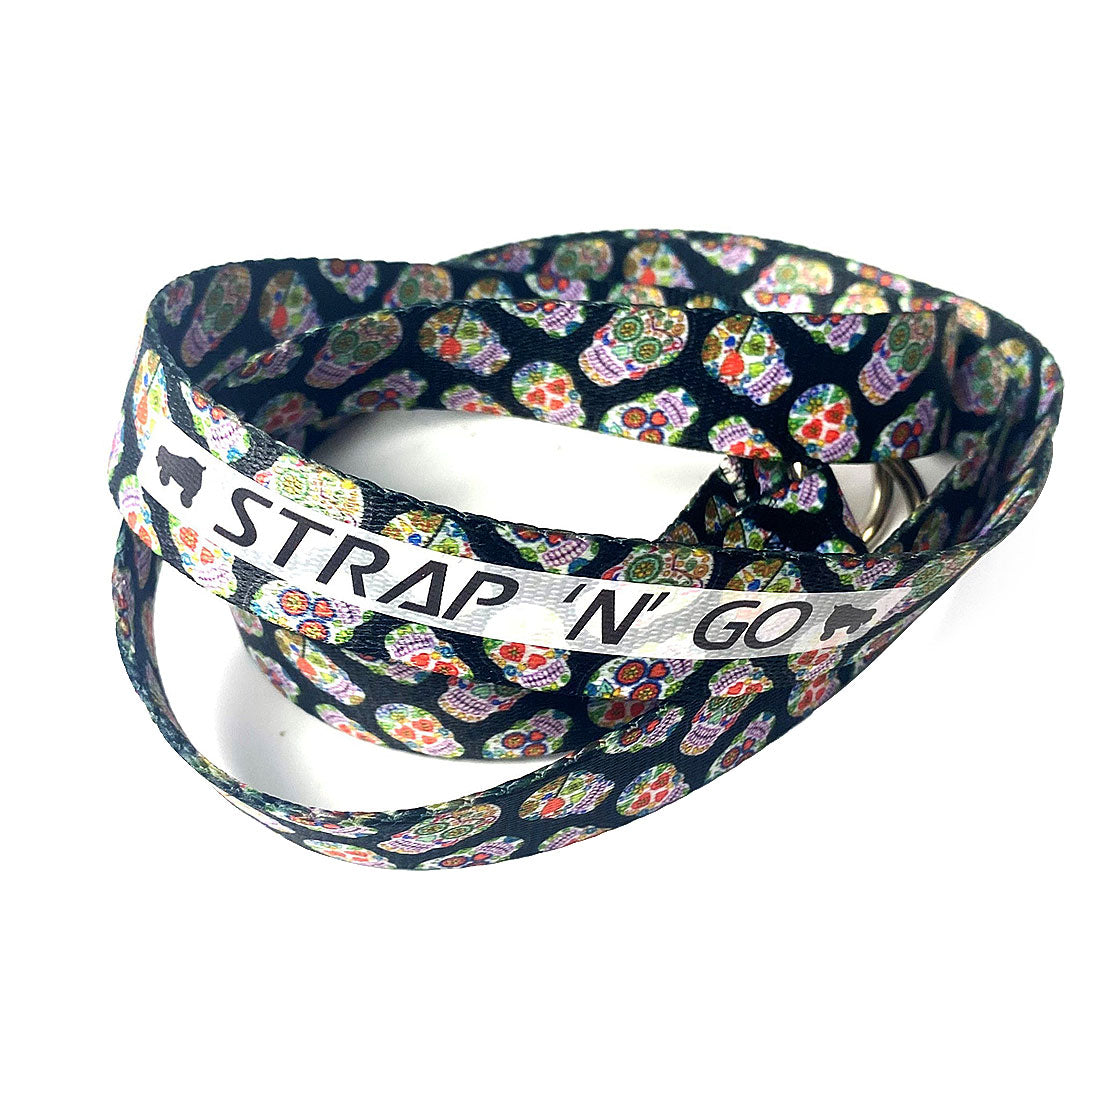 Strap N Go Skate Noose/Leash - Patterns Sugar Skull Roller Skate Accessories